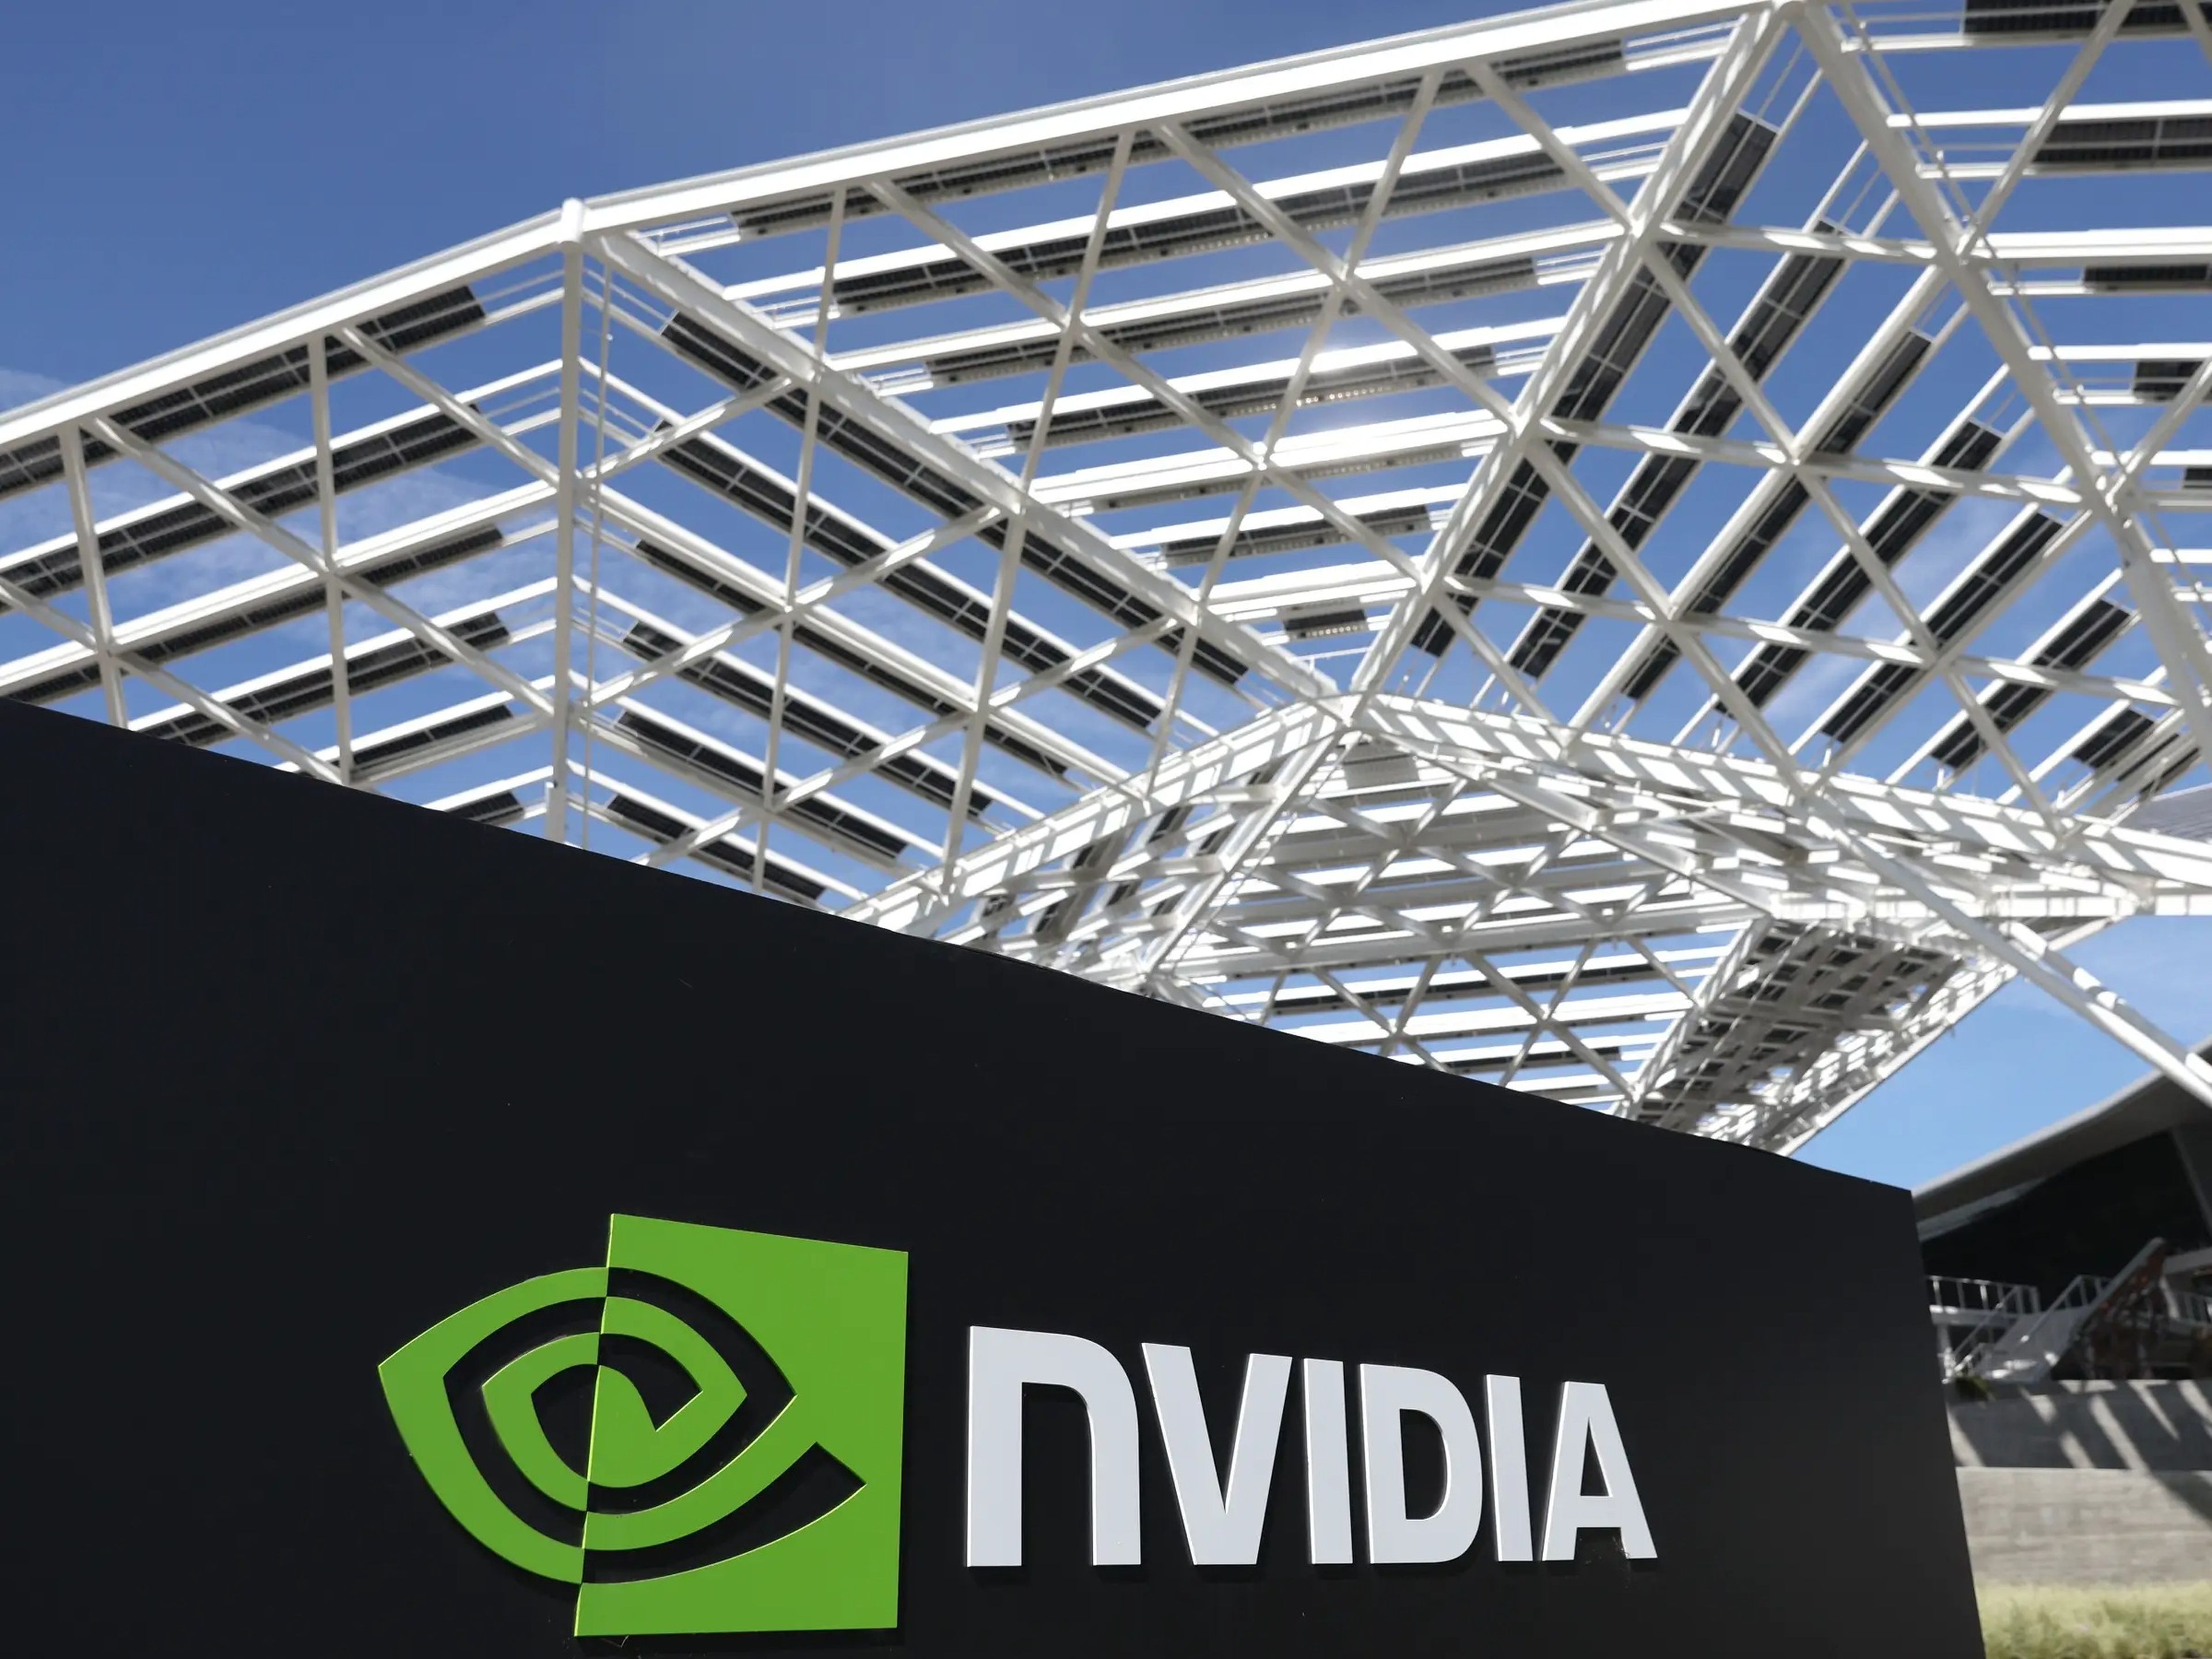 La sede de Nvidia en Santa Clara, California (Estados Unidos), se conoce como "Voyager".